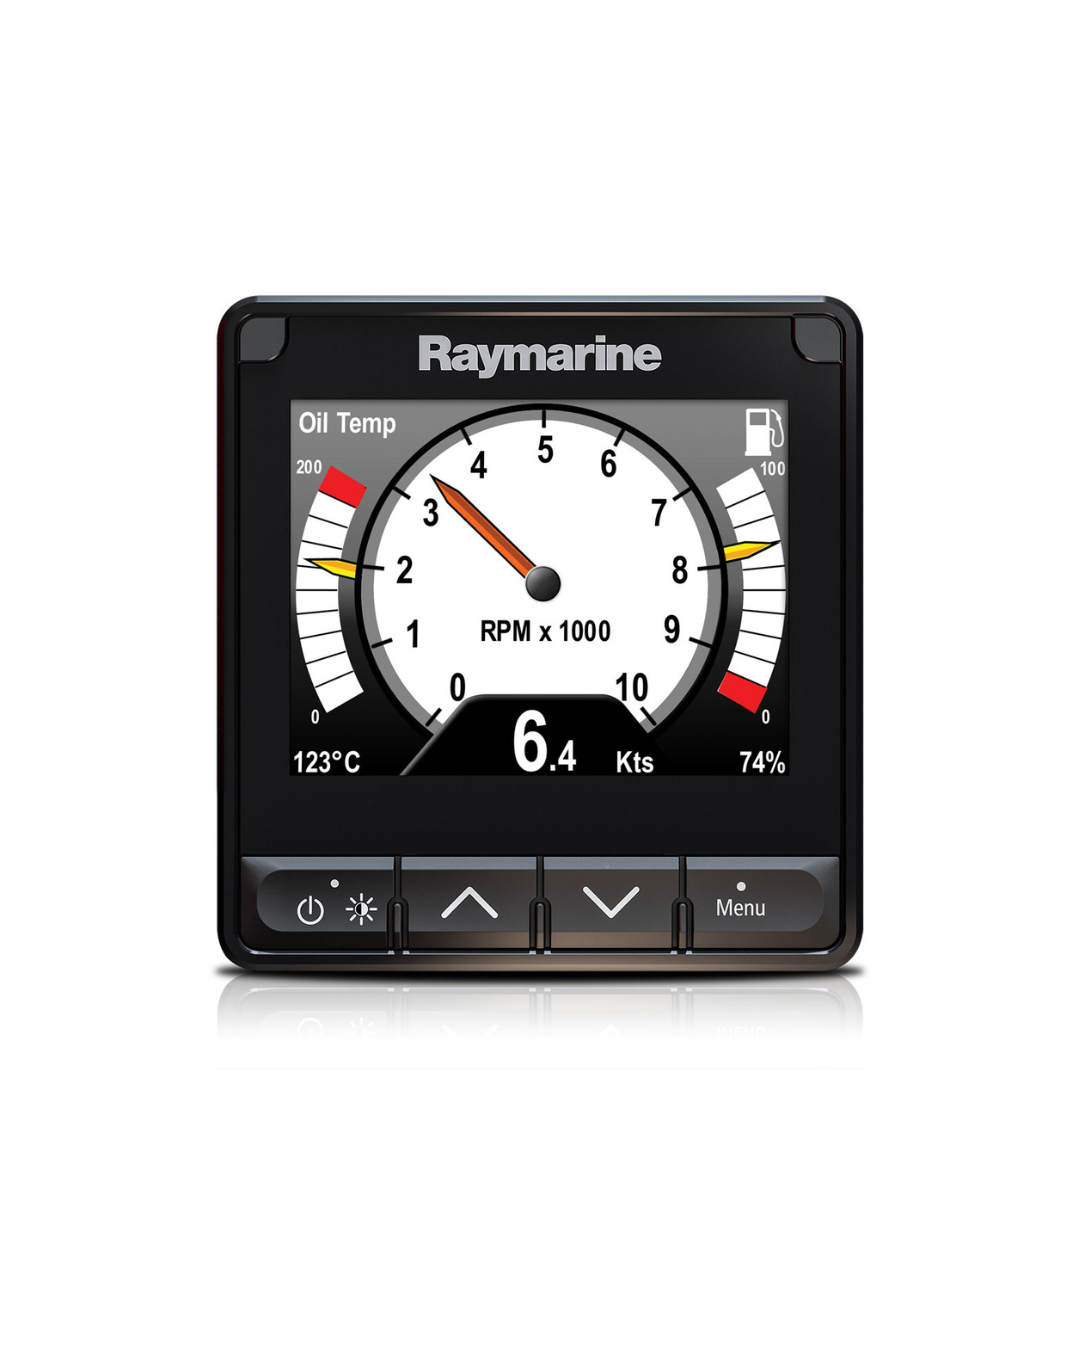 Raymarine i70s Multifunktionsinstrument Betriebstemperatur, Tankanzeige, Umdrehungen pro Minute